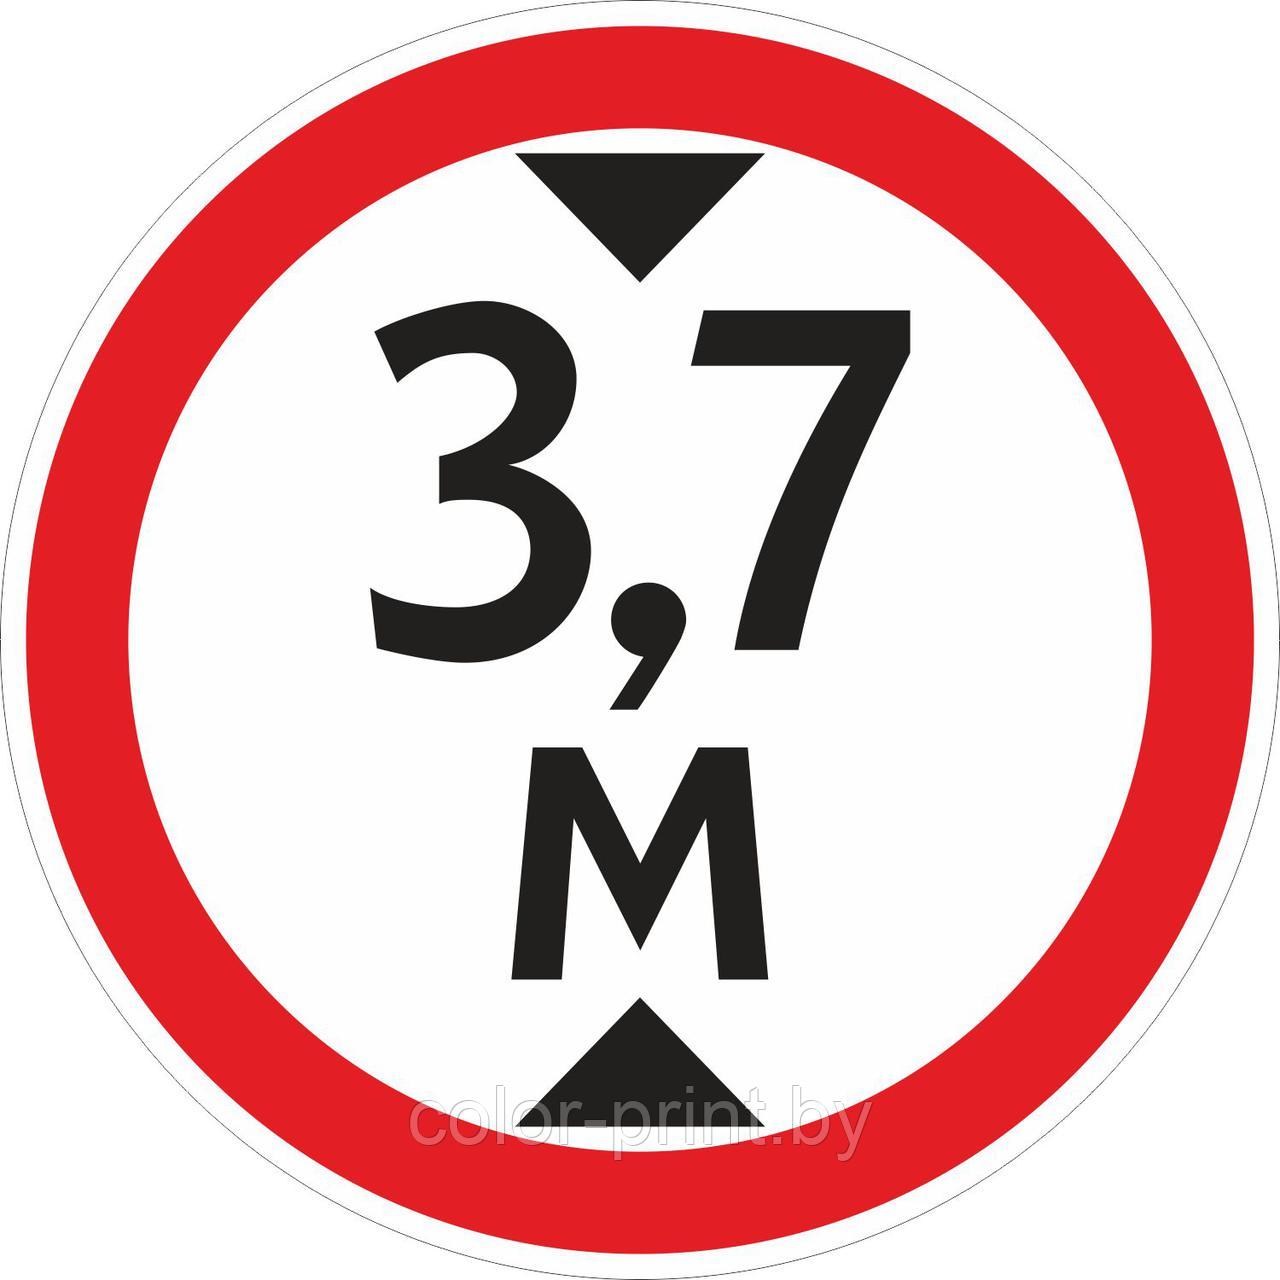 Наклейка ПВХ "Ограничение высоты проезда 3.7м"